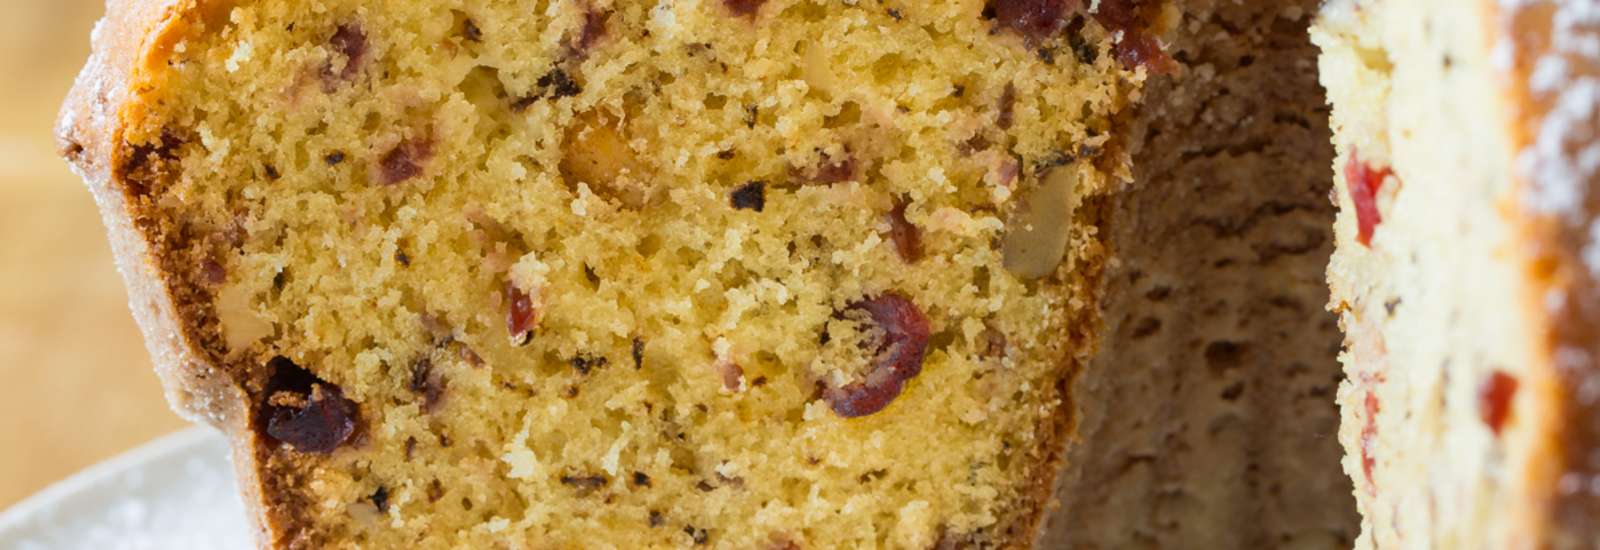 Cranberry Walnut Cake #Recipe | ExploreAsheville.com